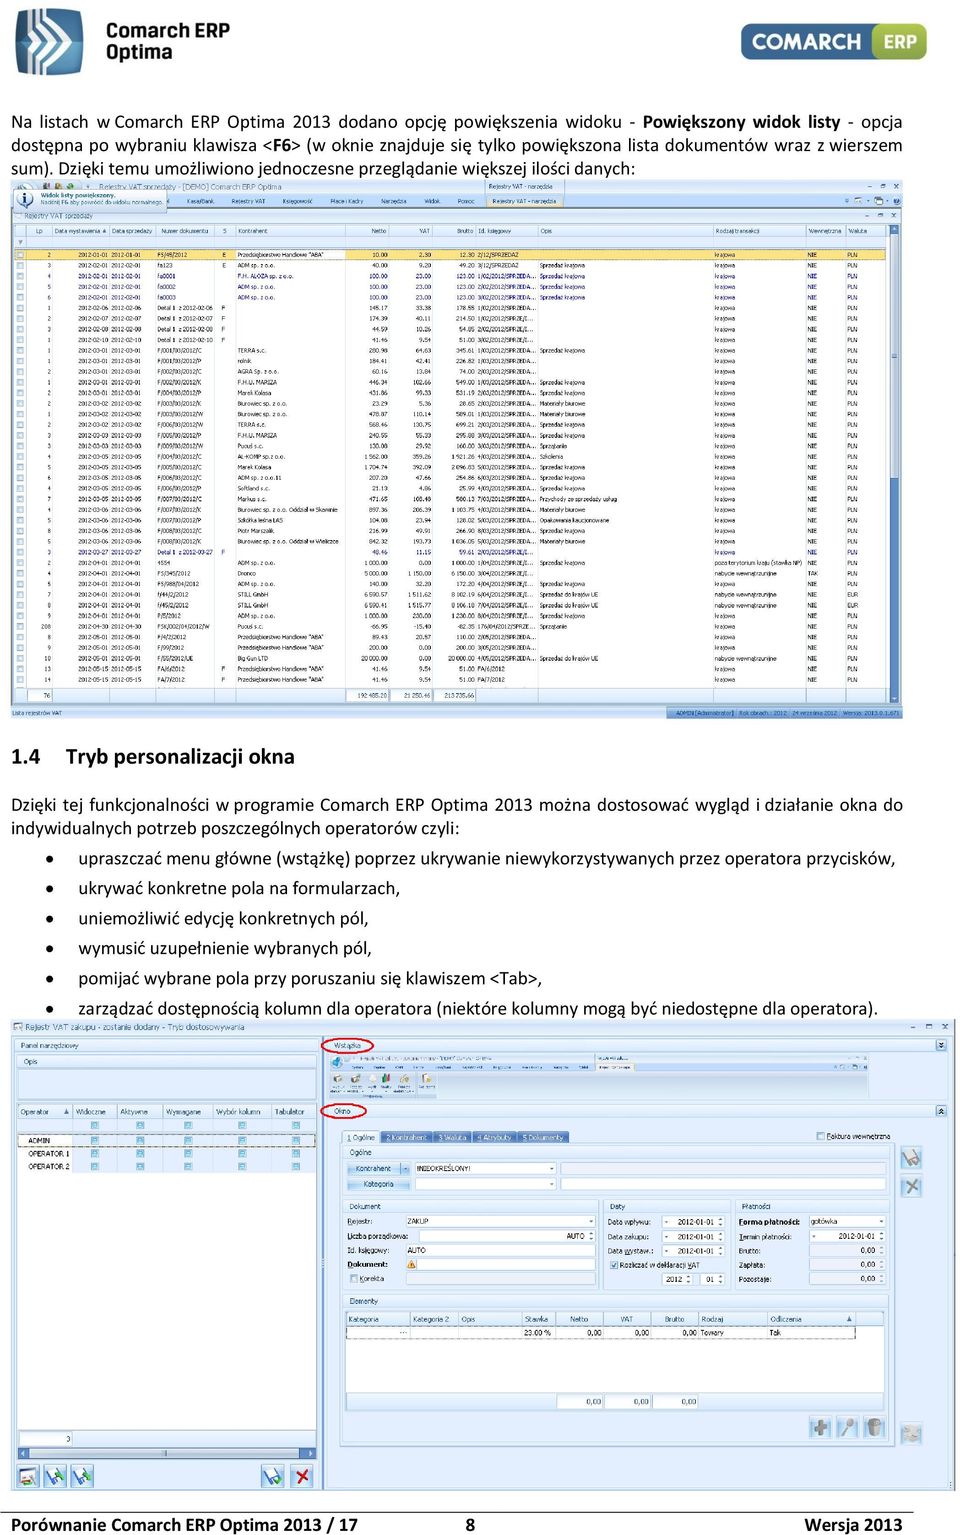 4 Tryb personalizacji okna Dzięki tej funkcjonalności w programie Comarch ERP Optima 2013 można dostosować wygląd i działanie okna do indywidualnych potrzeb poszczególnych operatorów czyli: